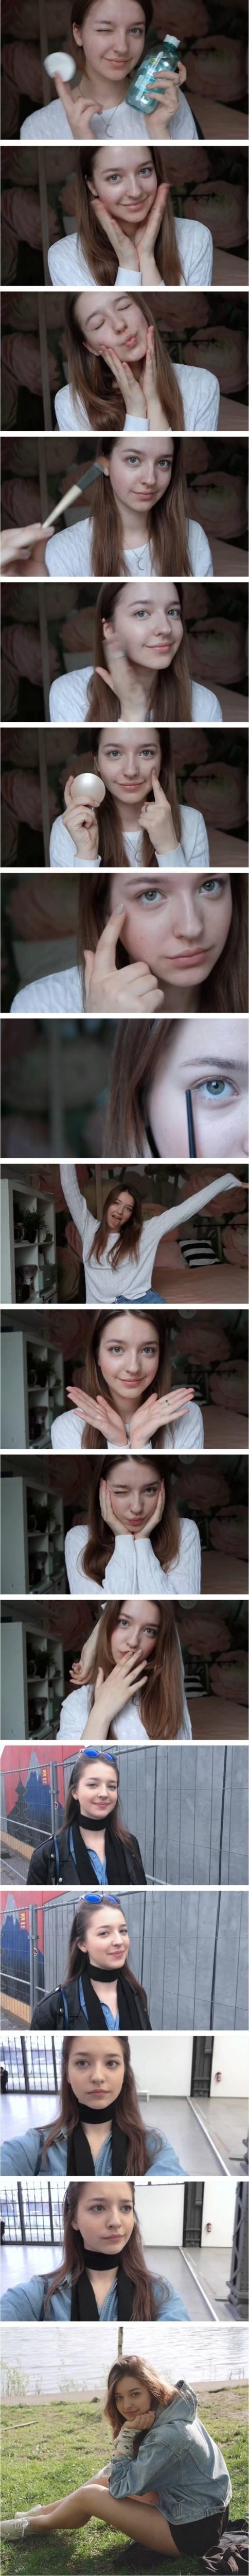 러시아 미녀의 화장 전후 비교샷